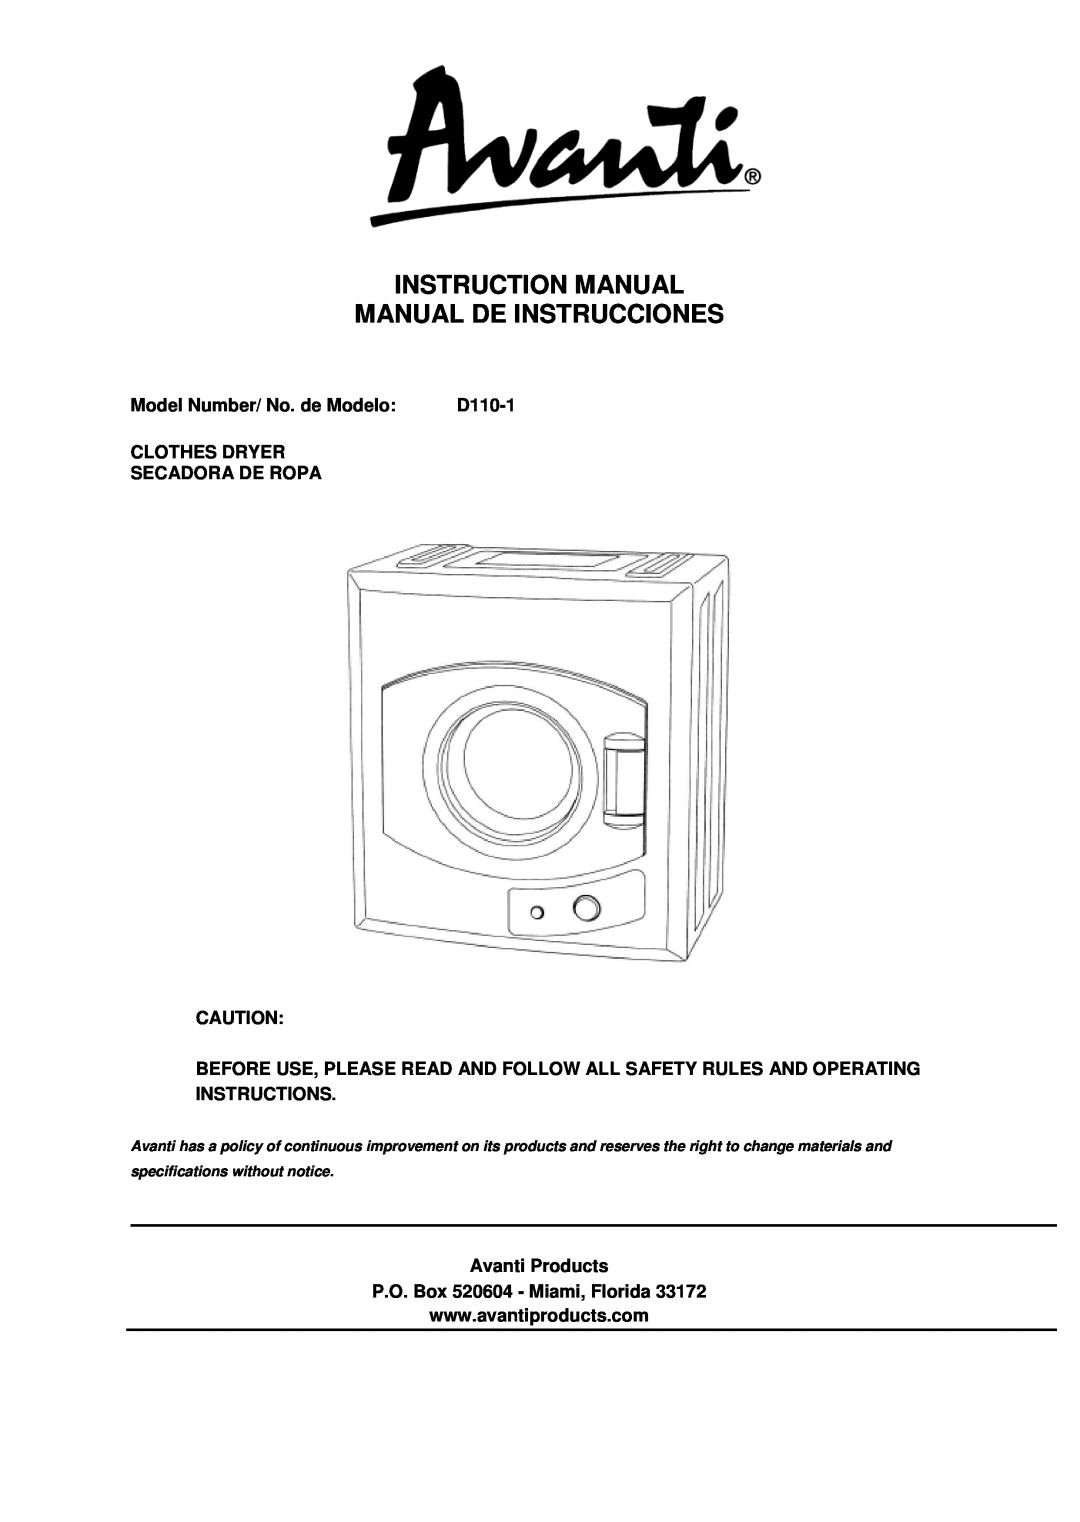 Avanti D110-1 instruction manual Instruction Manual Manual De Instrucciones, Model Number/ No. de Modelo 